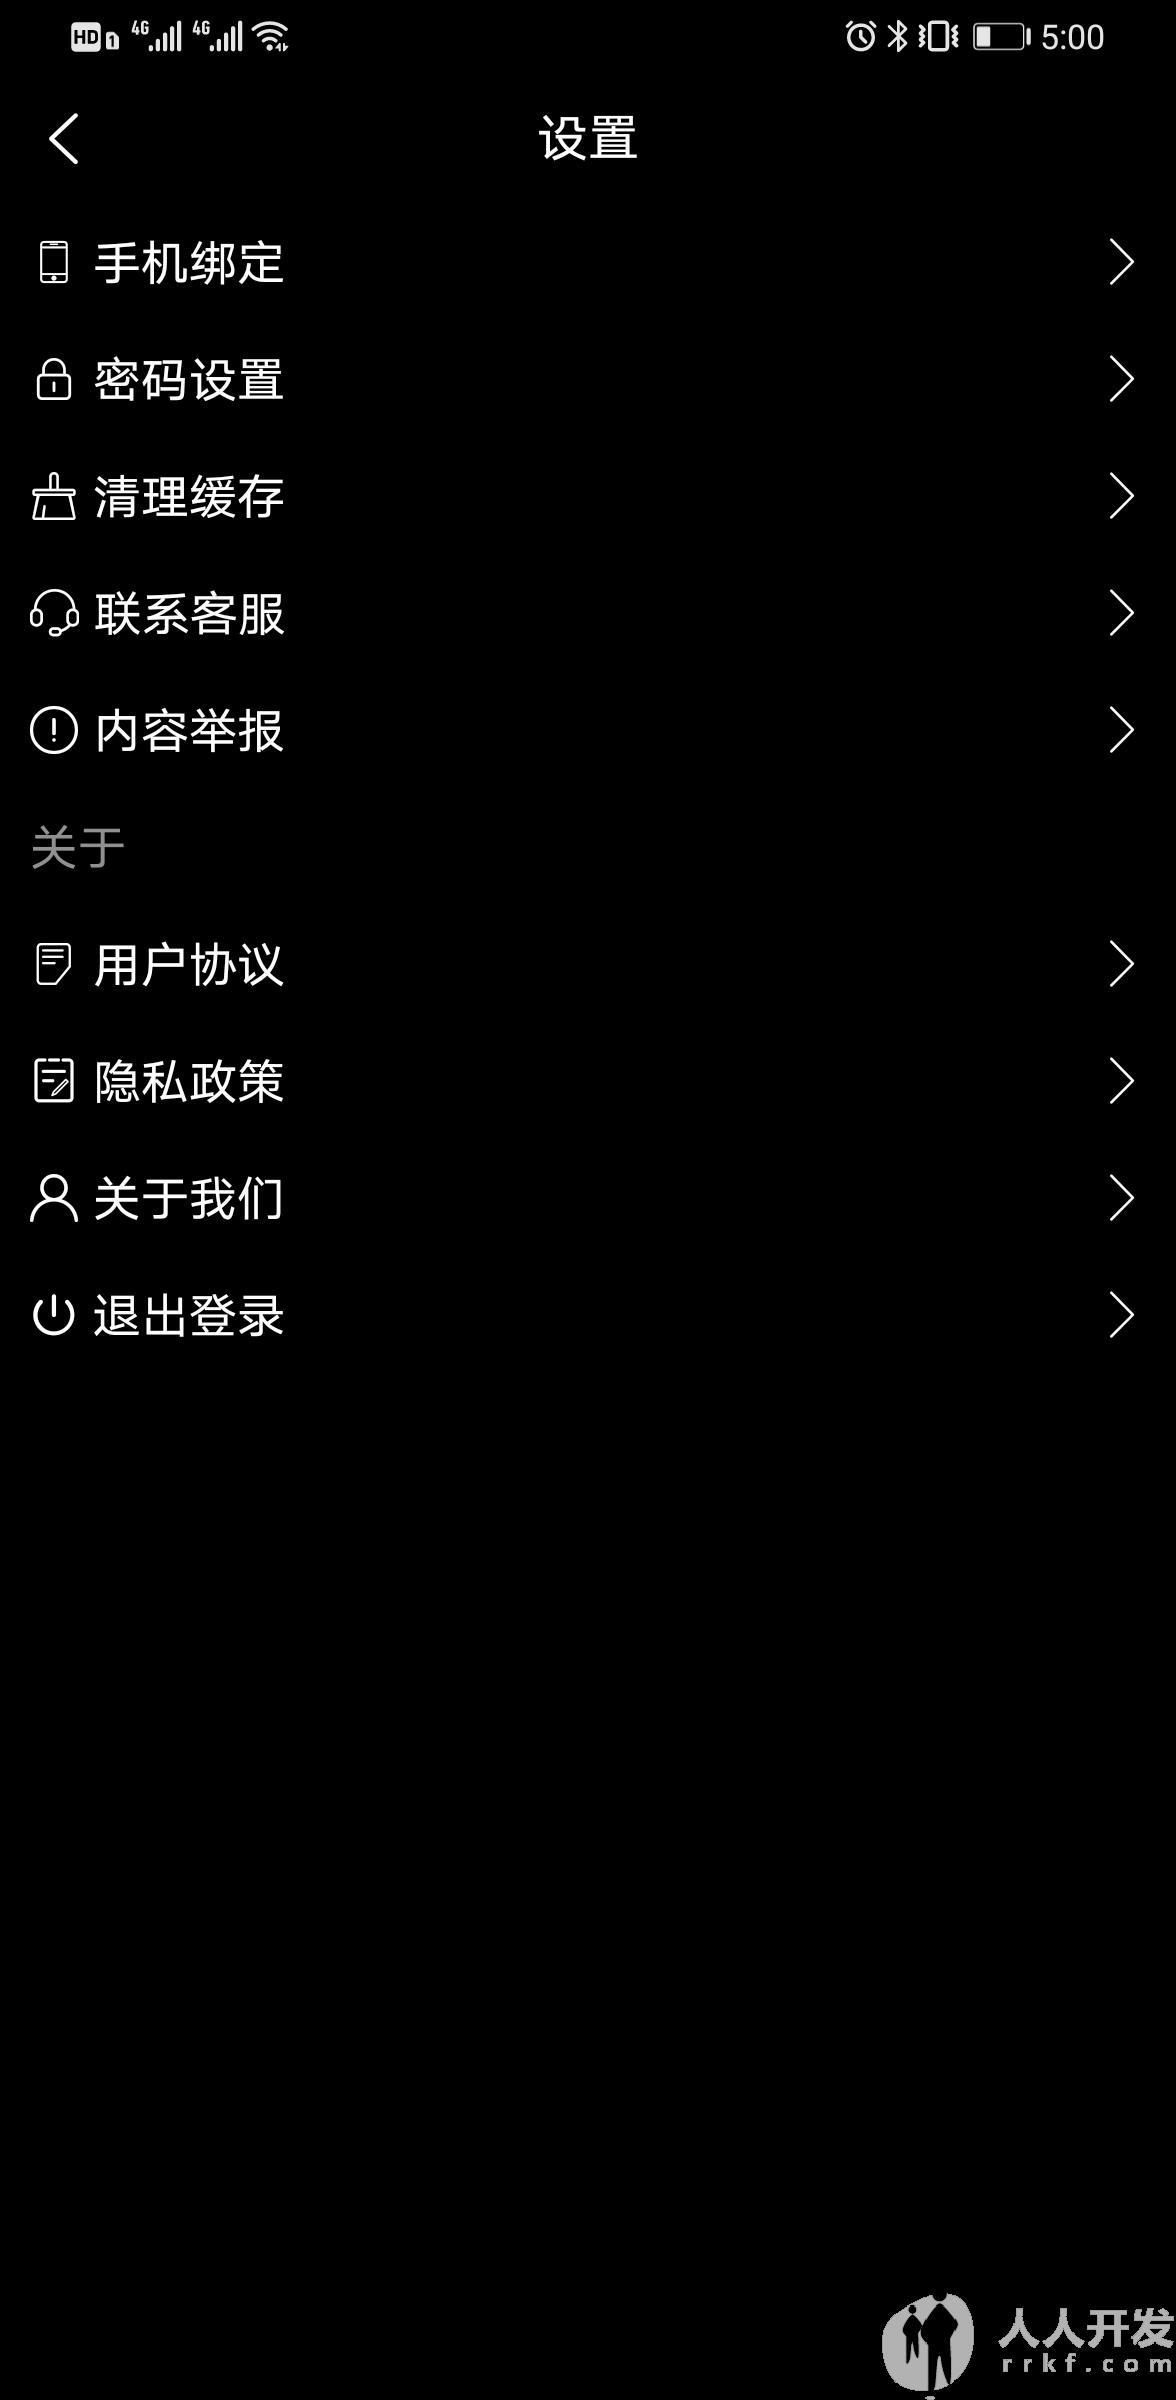 Screenshot 20210423 170027 com.yiyuanyoudao.app